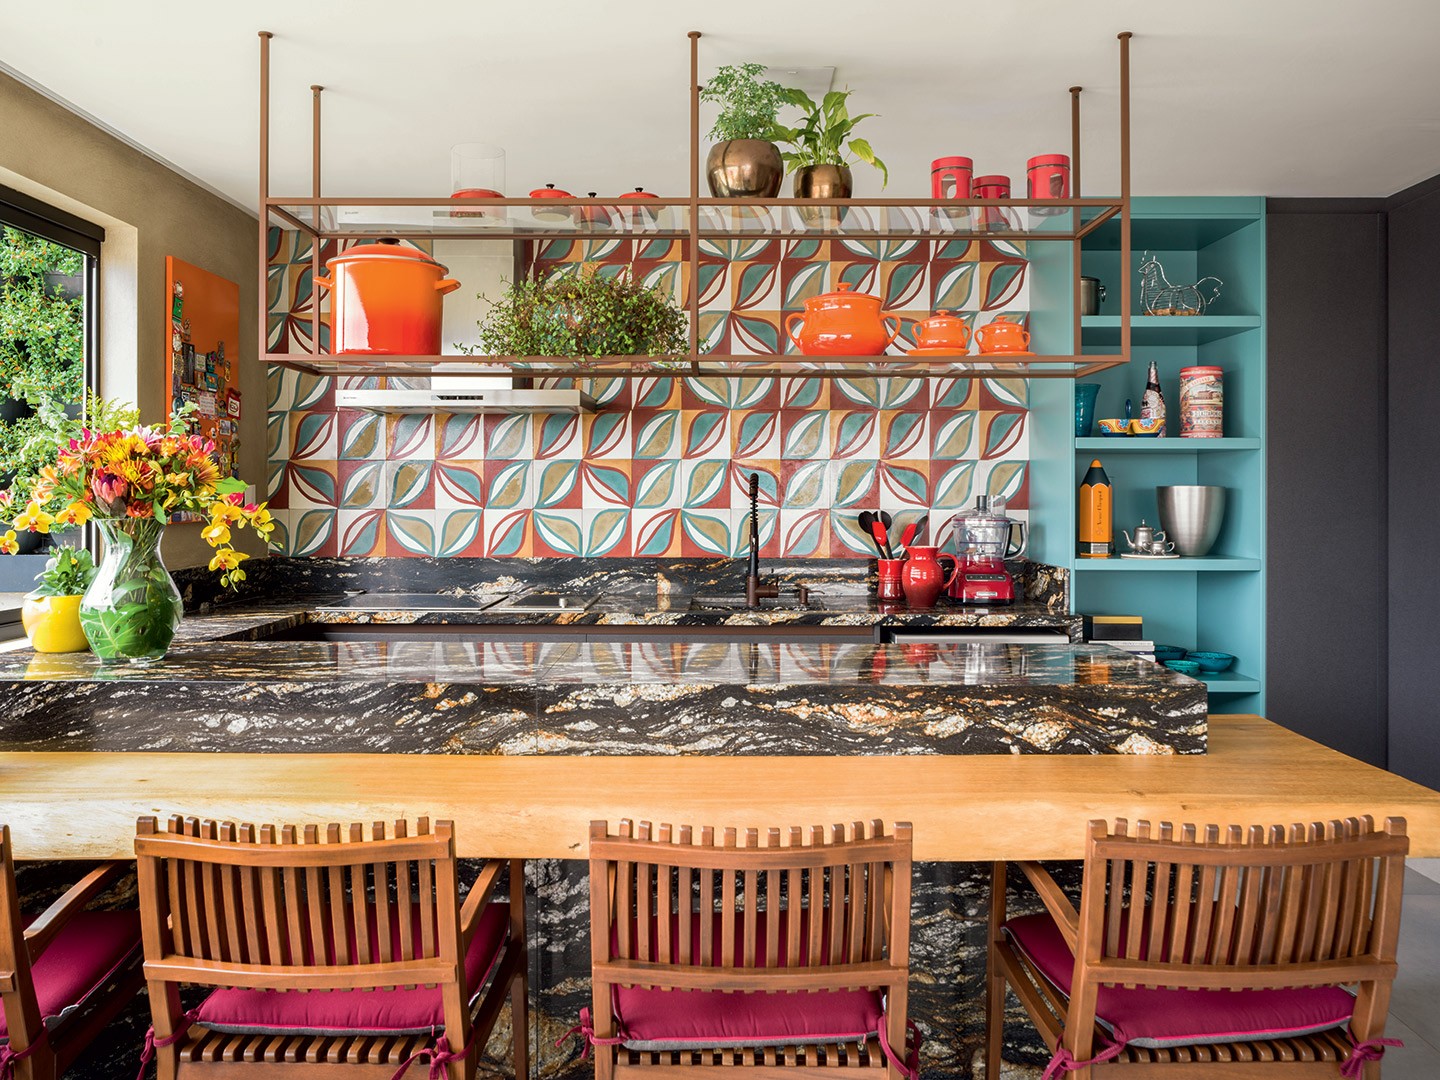 Área de lazer com espaço gourmet tem decór descontraído e colorido (Foto: Romulo Fialdini)